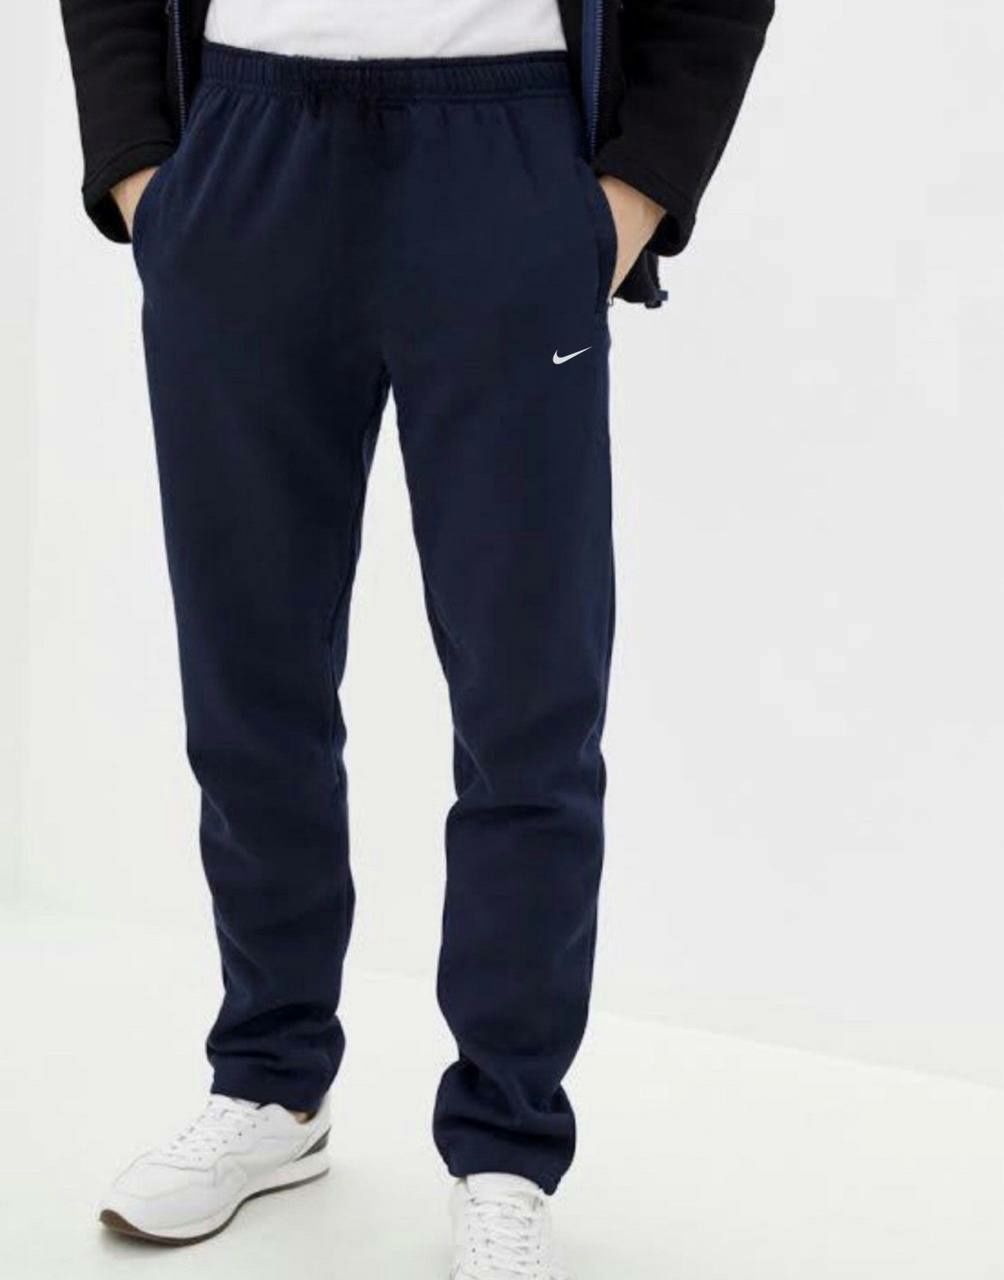 Nike БАТАЛ S-7XL Большие размеры спортивный костюм мужской лёгкий